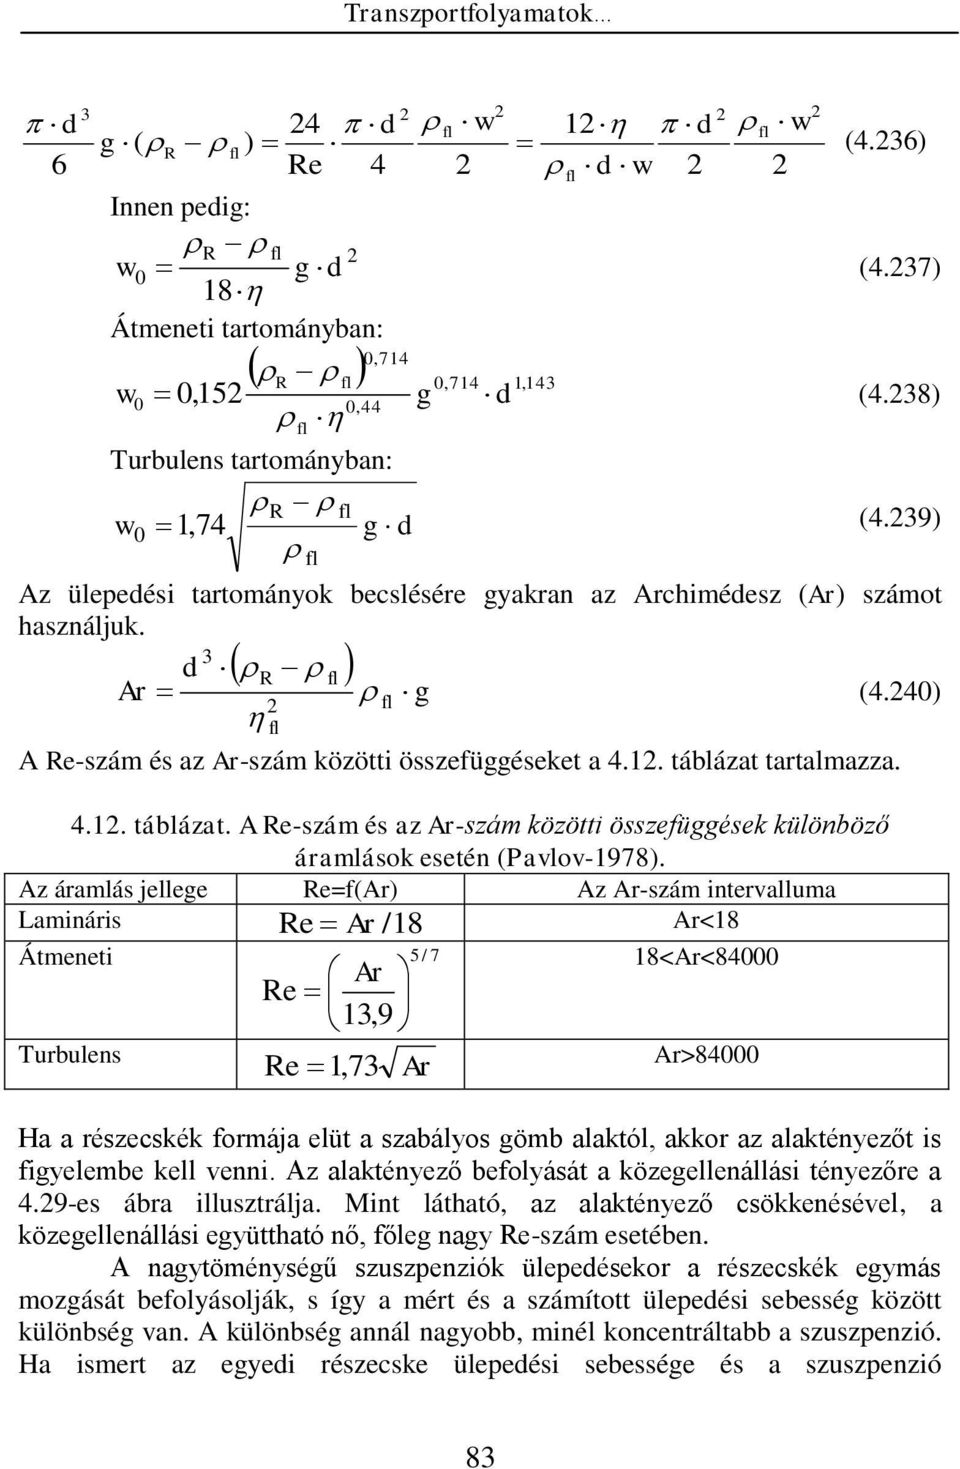 tartalmazza. 4.. táblázat. A Re-szám és az Ar-szám közötti összefüggések különböző áramlások esetén (Pavlov-978).